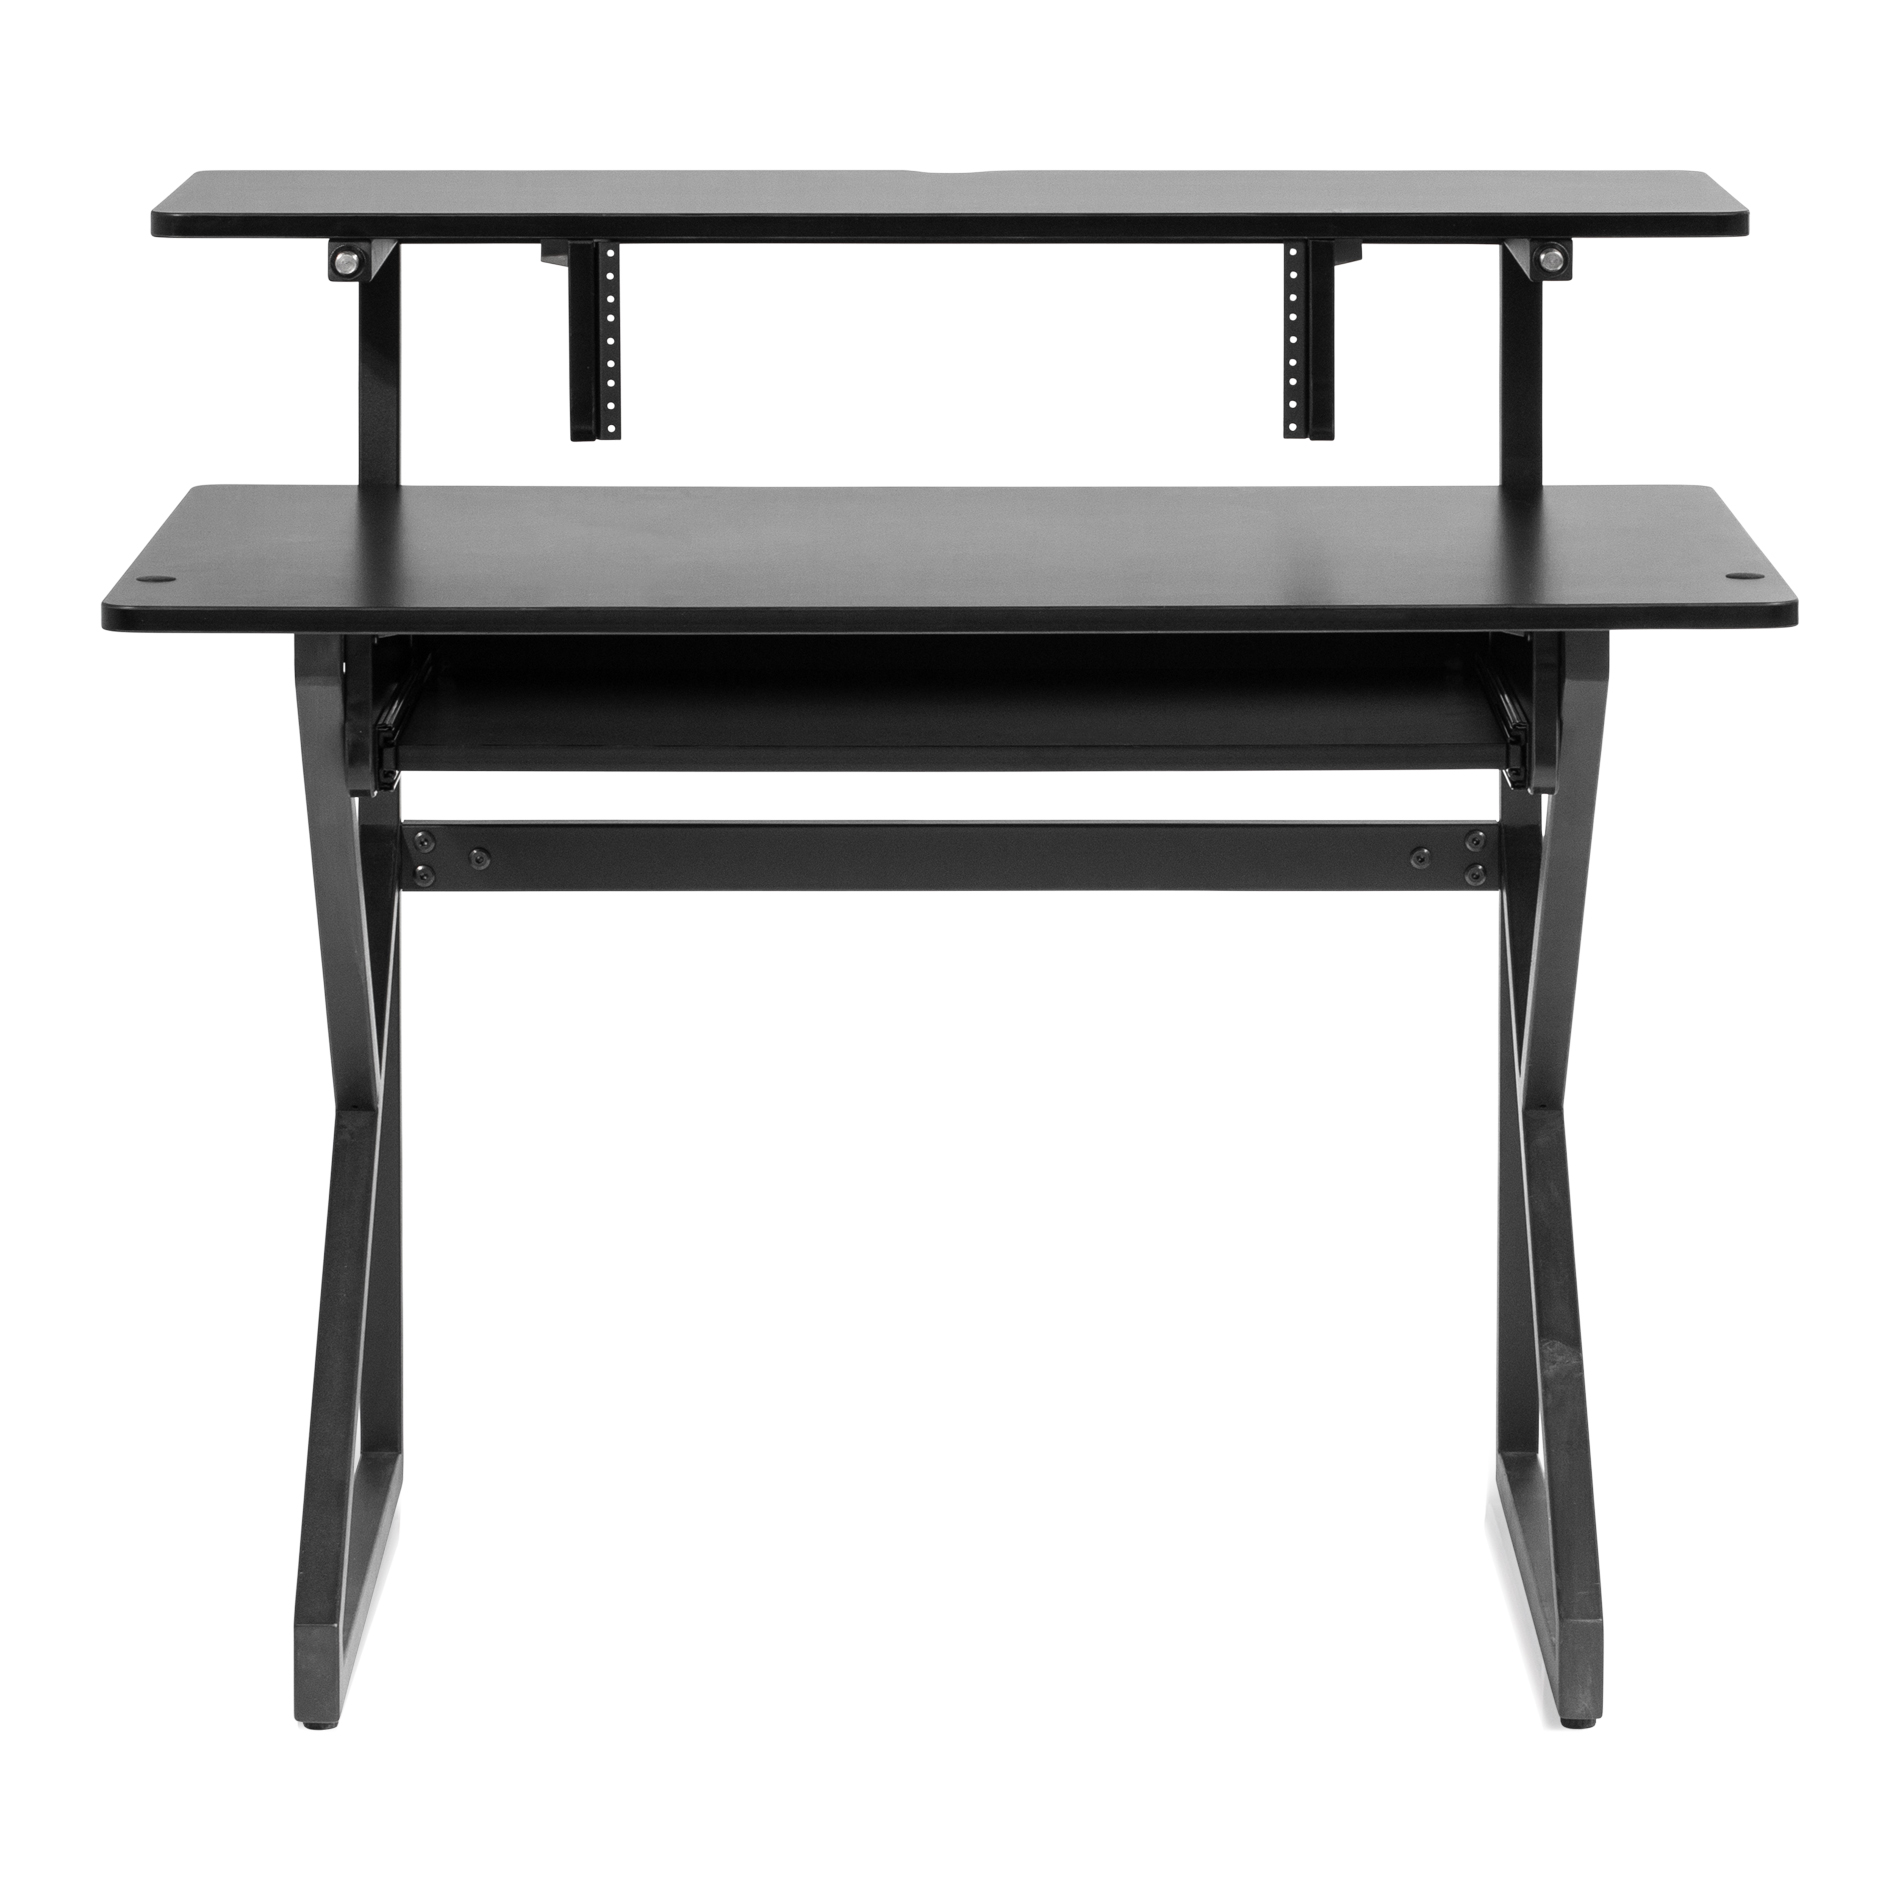 Content Furniture Desk – BLK-GFW-DESK-MAIN